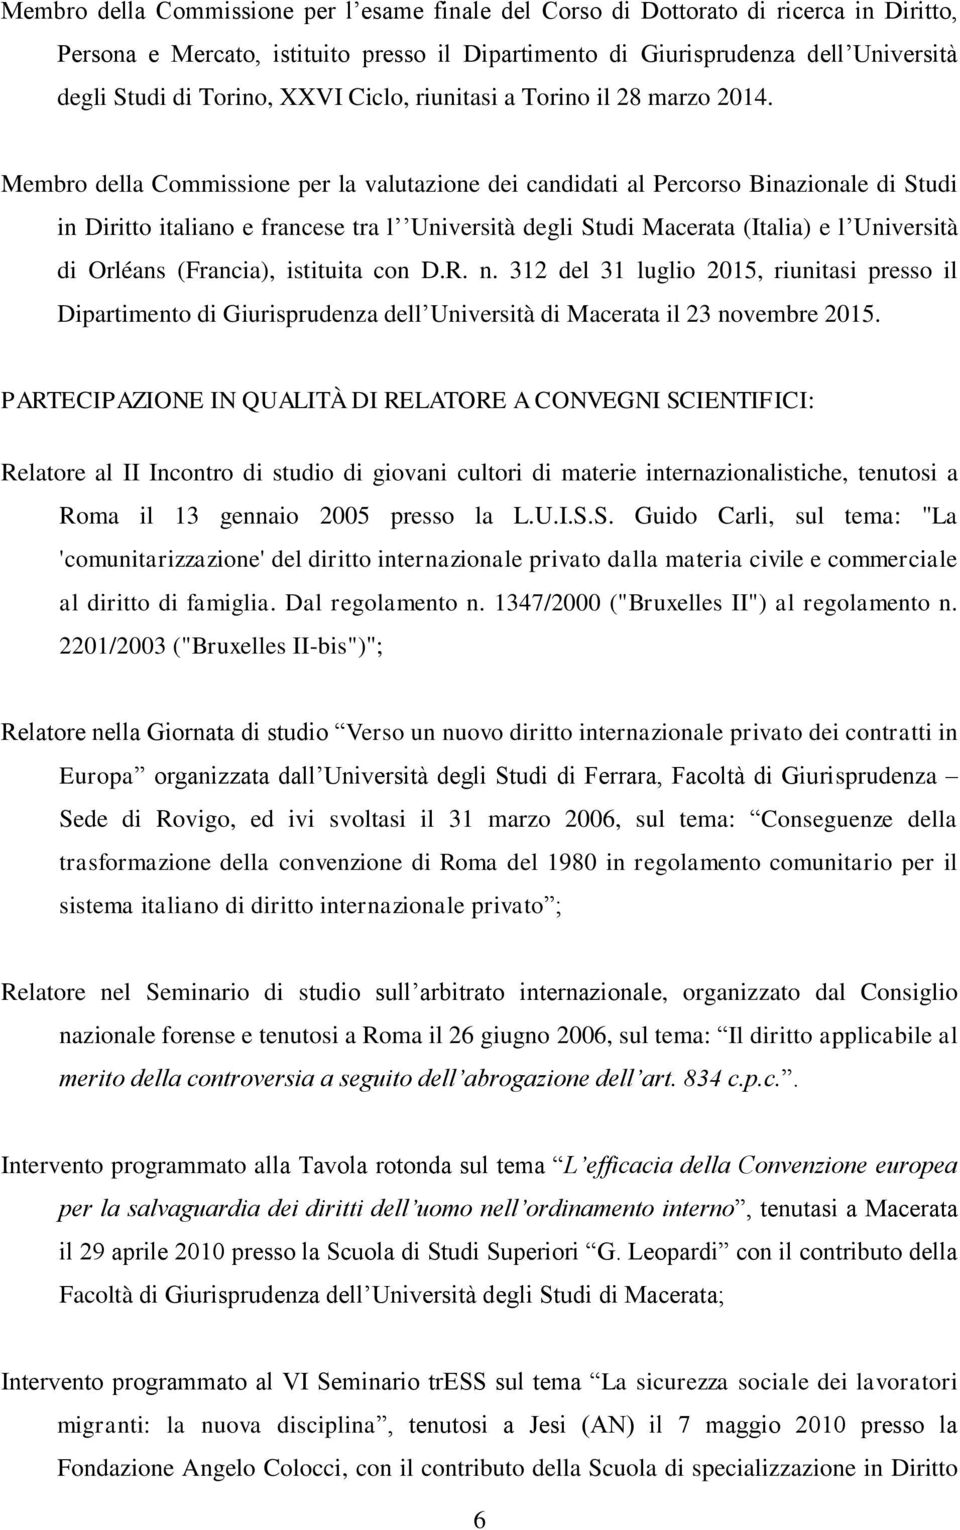 Membro della Commissione per la valutazione dei candidati al Percorso Binazionale di Studi in Diritto italiano e francese tra l Università degli Studi Macerata (Italia) e l Università di Orléans